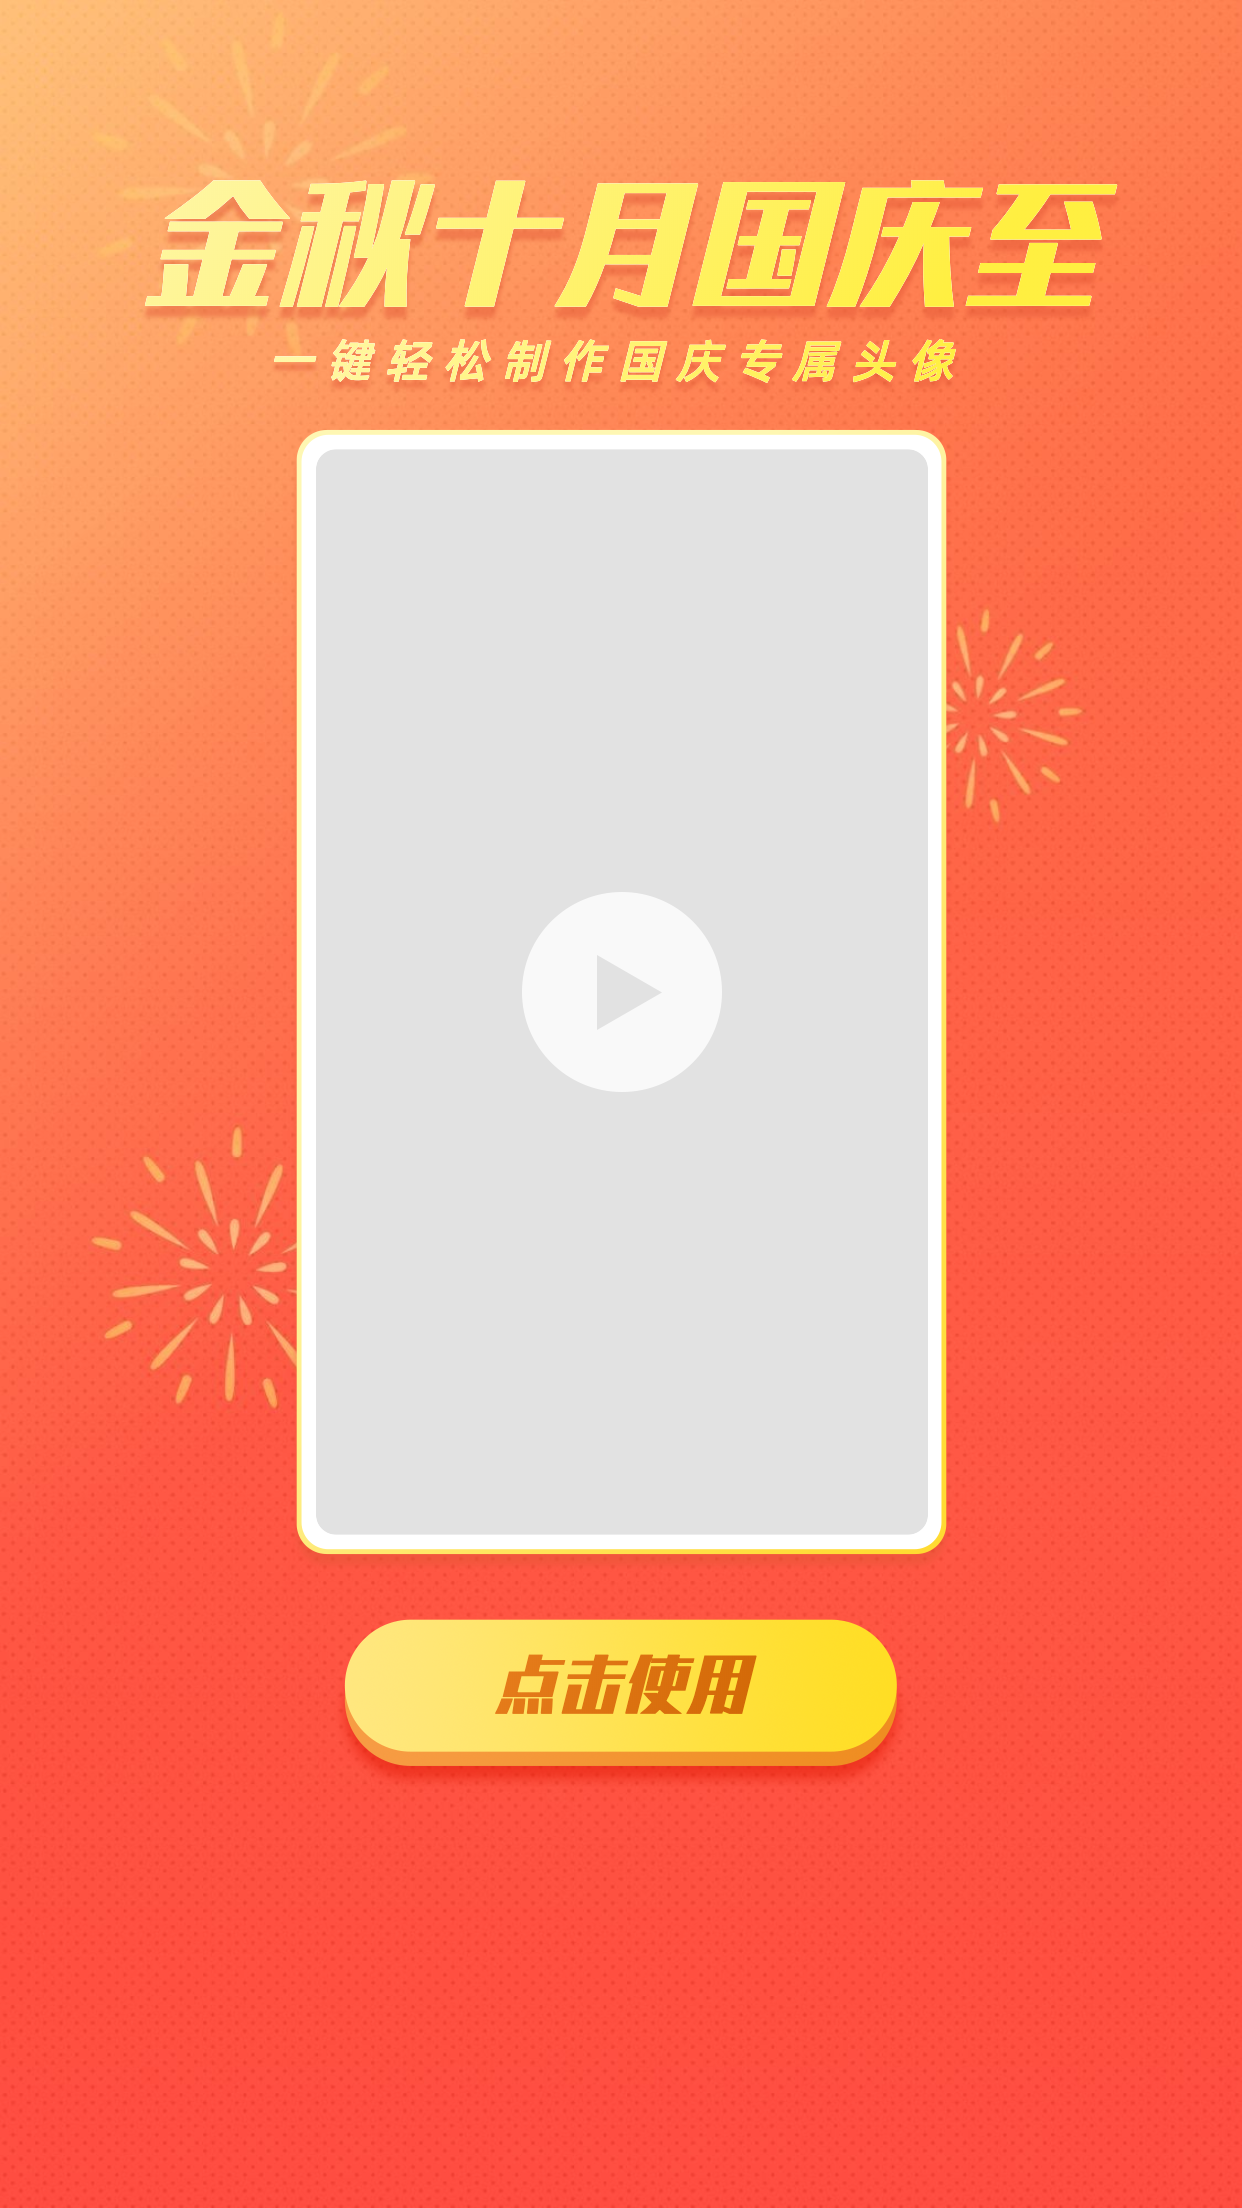 简约国庆节视频元素手机海报